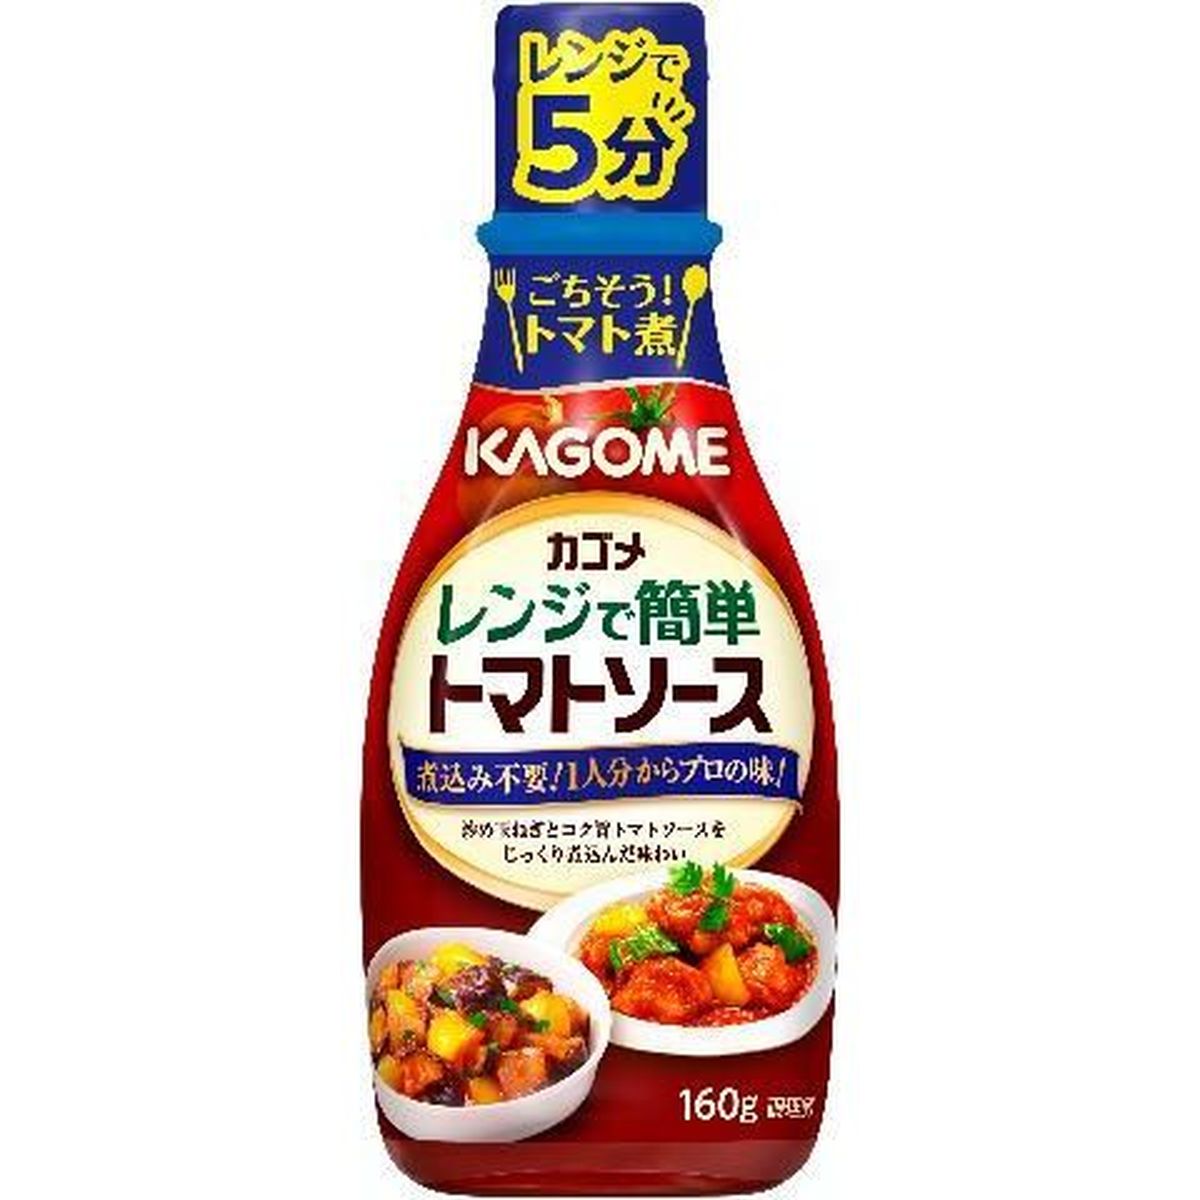 【10個入リ】カゴメ レンジデ簡単トマトソース 160g